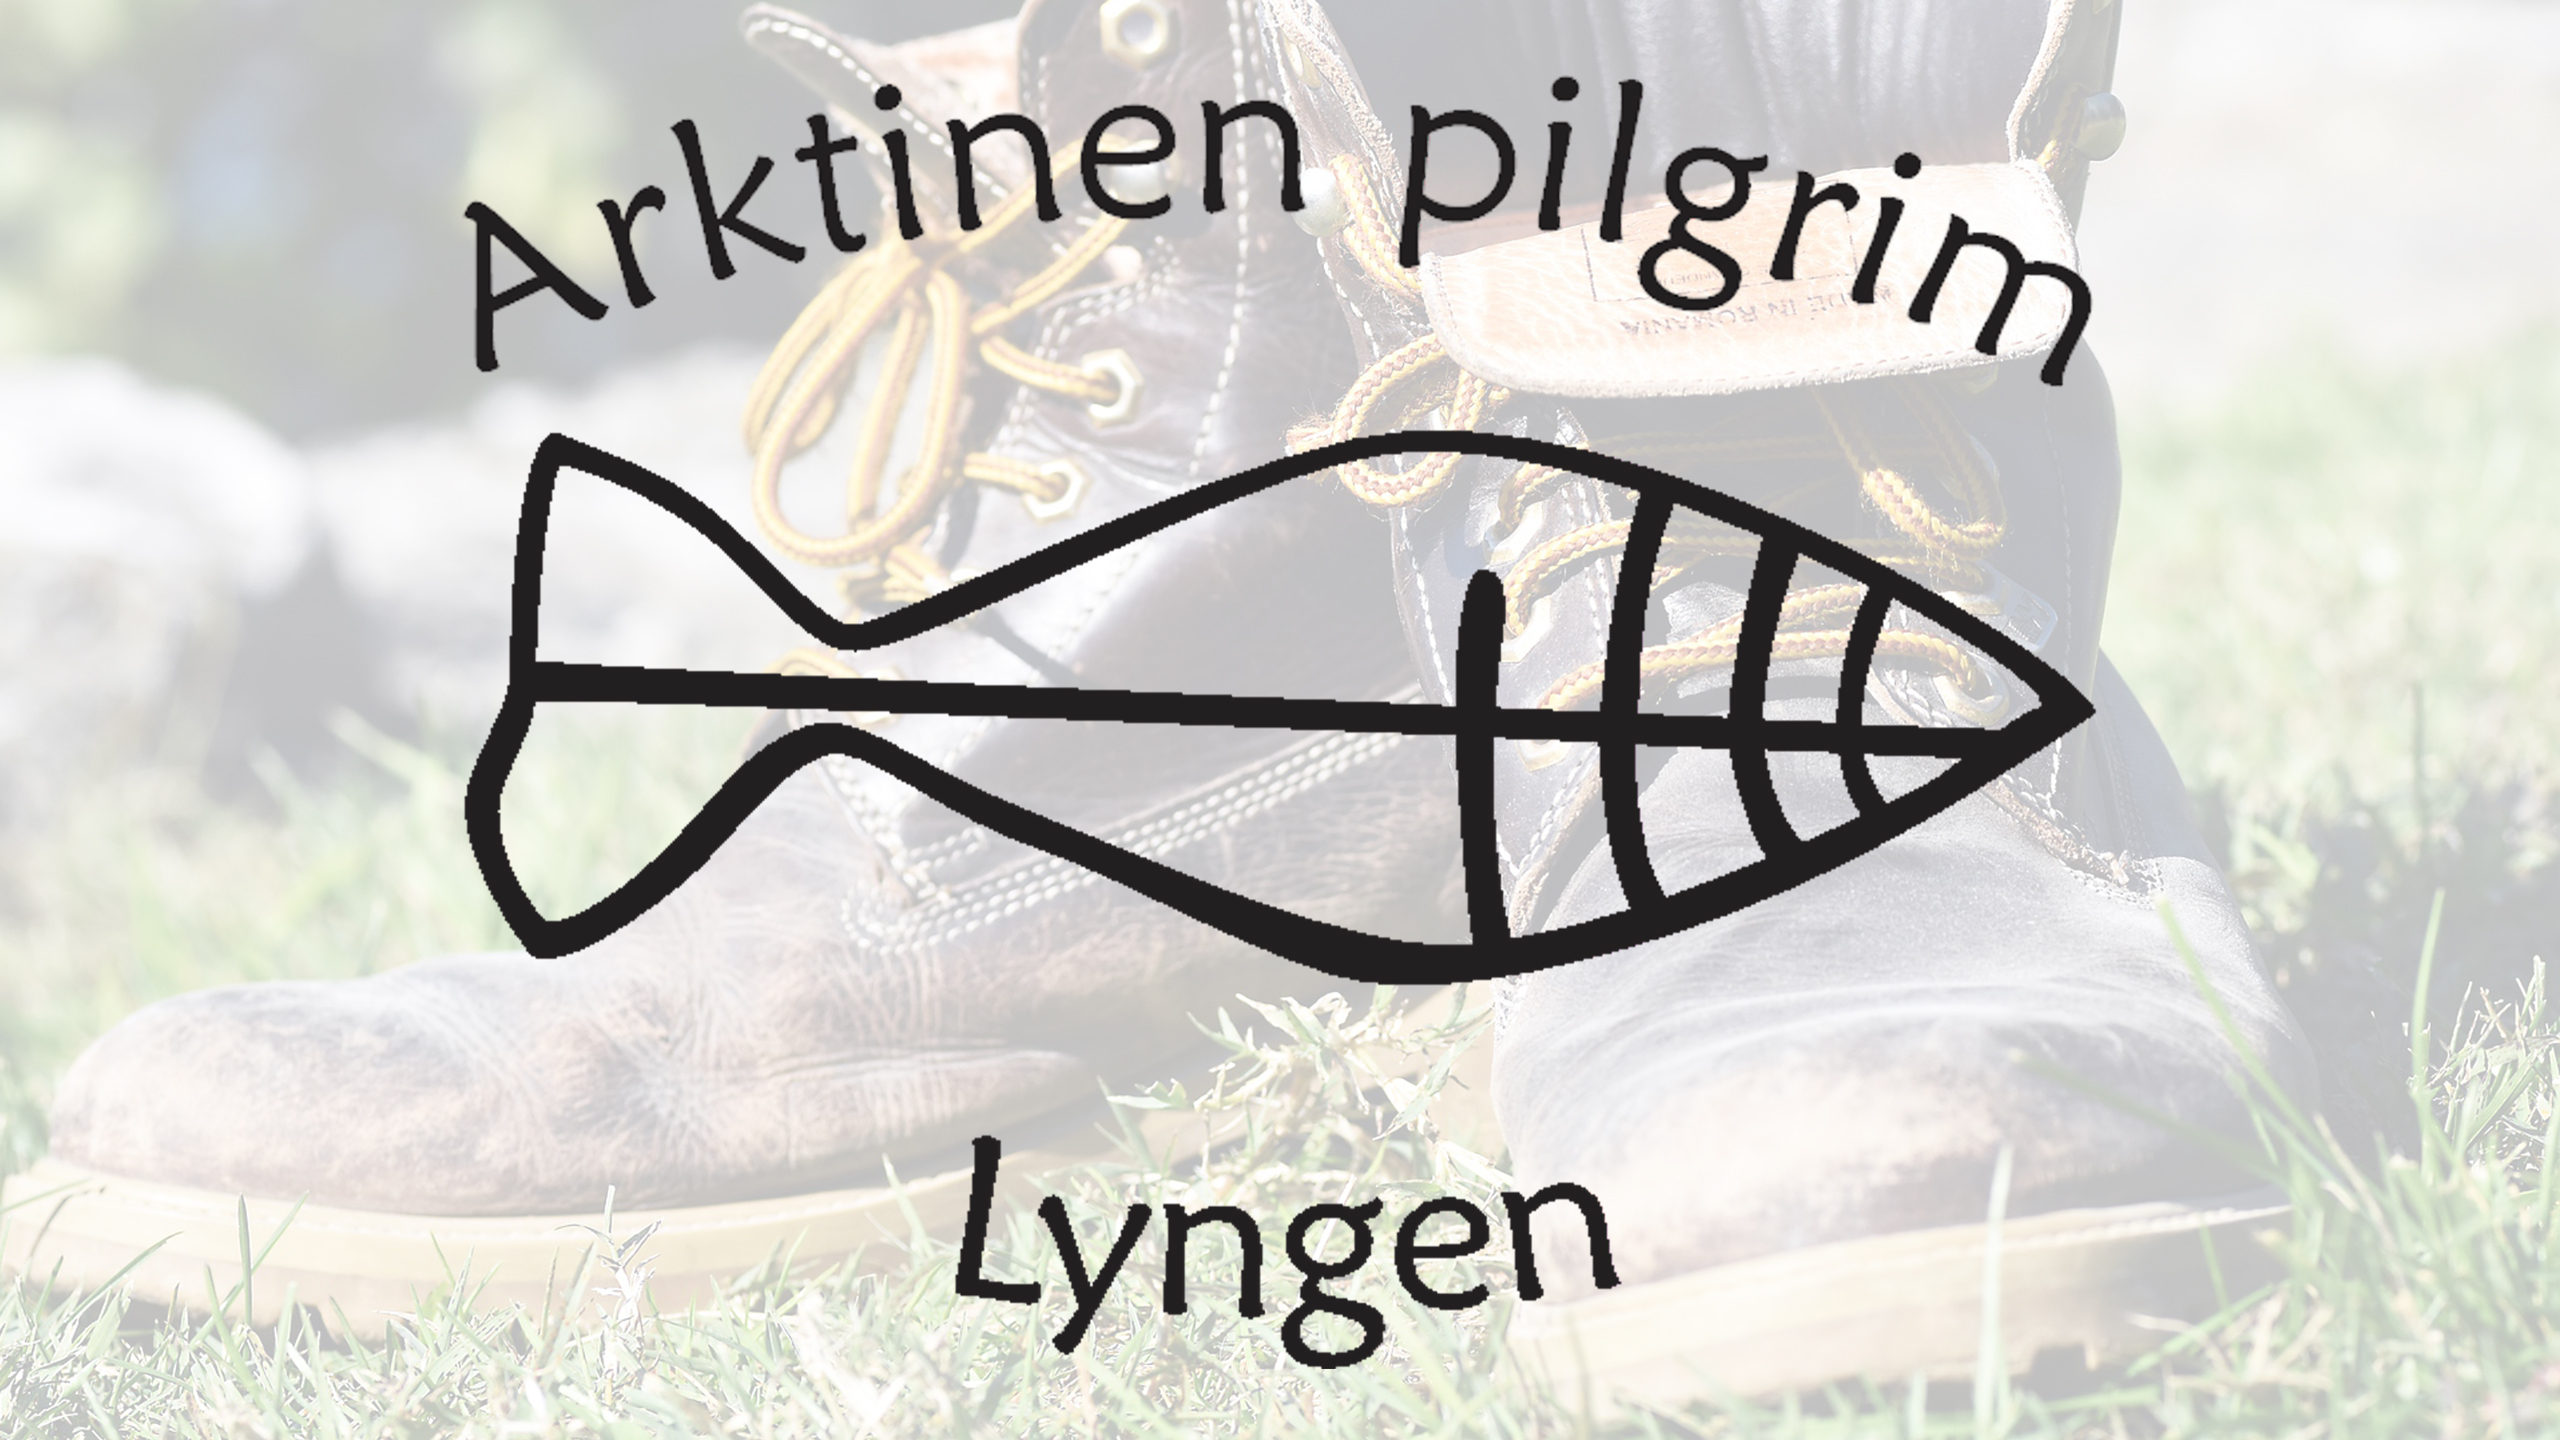 Arktinen pilgrim Lyngen